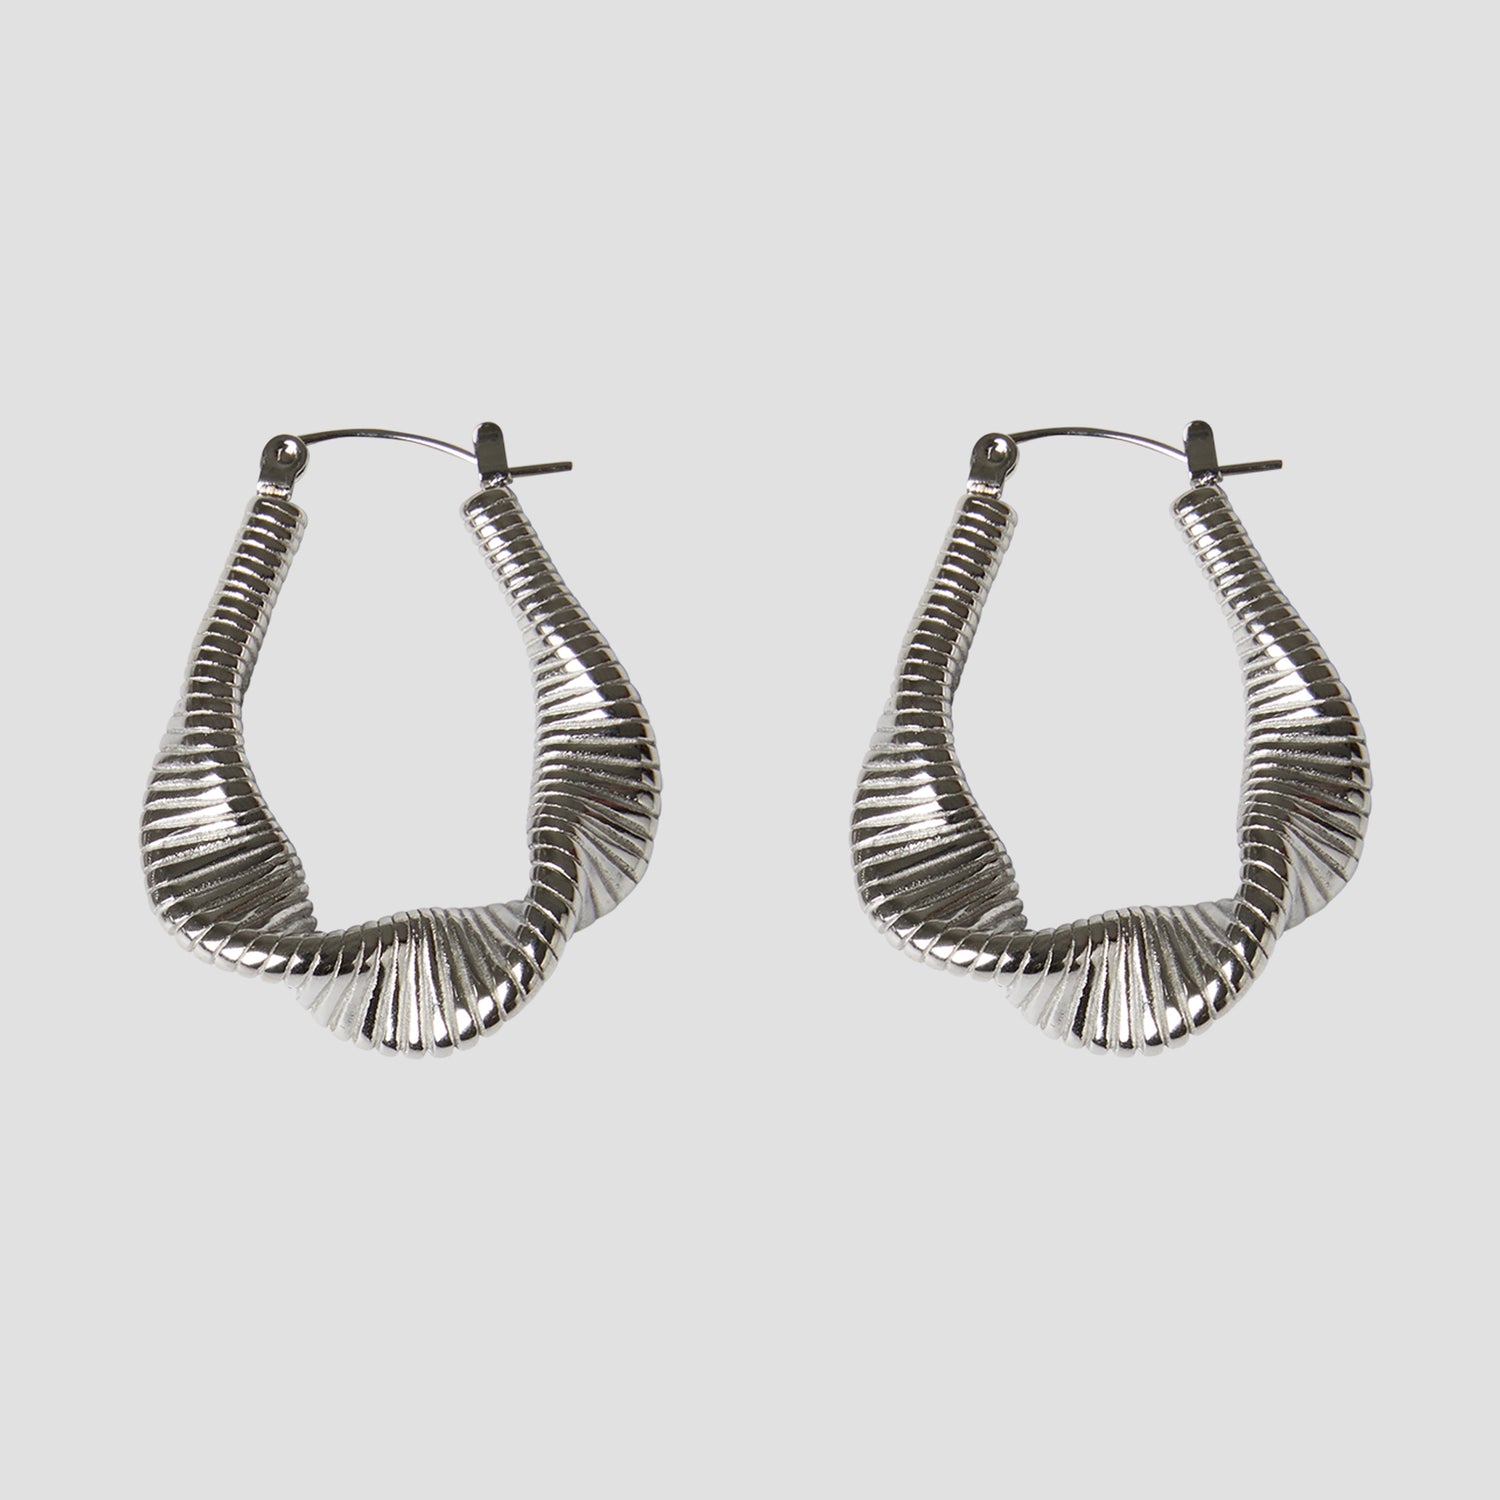 Stainless Steel Twist Geometric Earrings